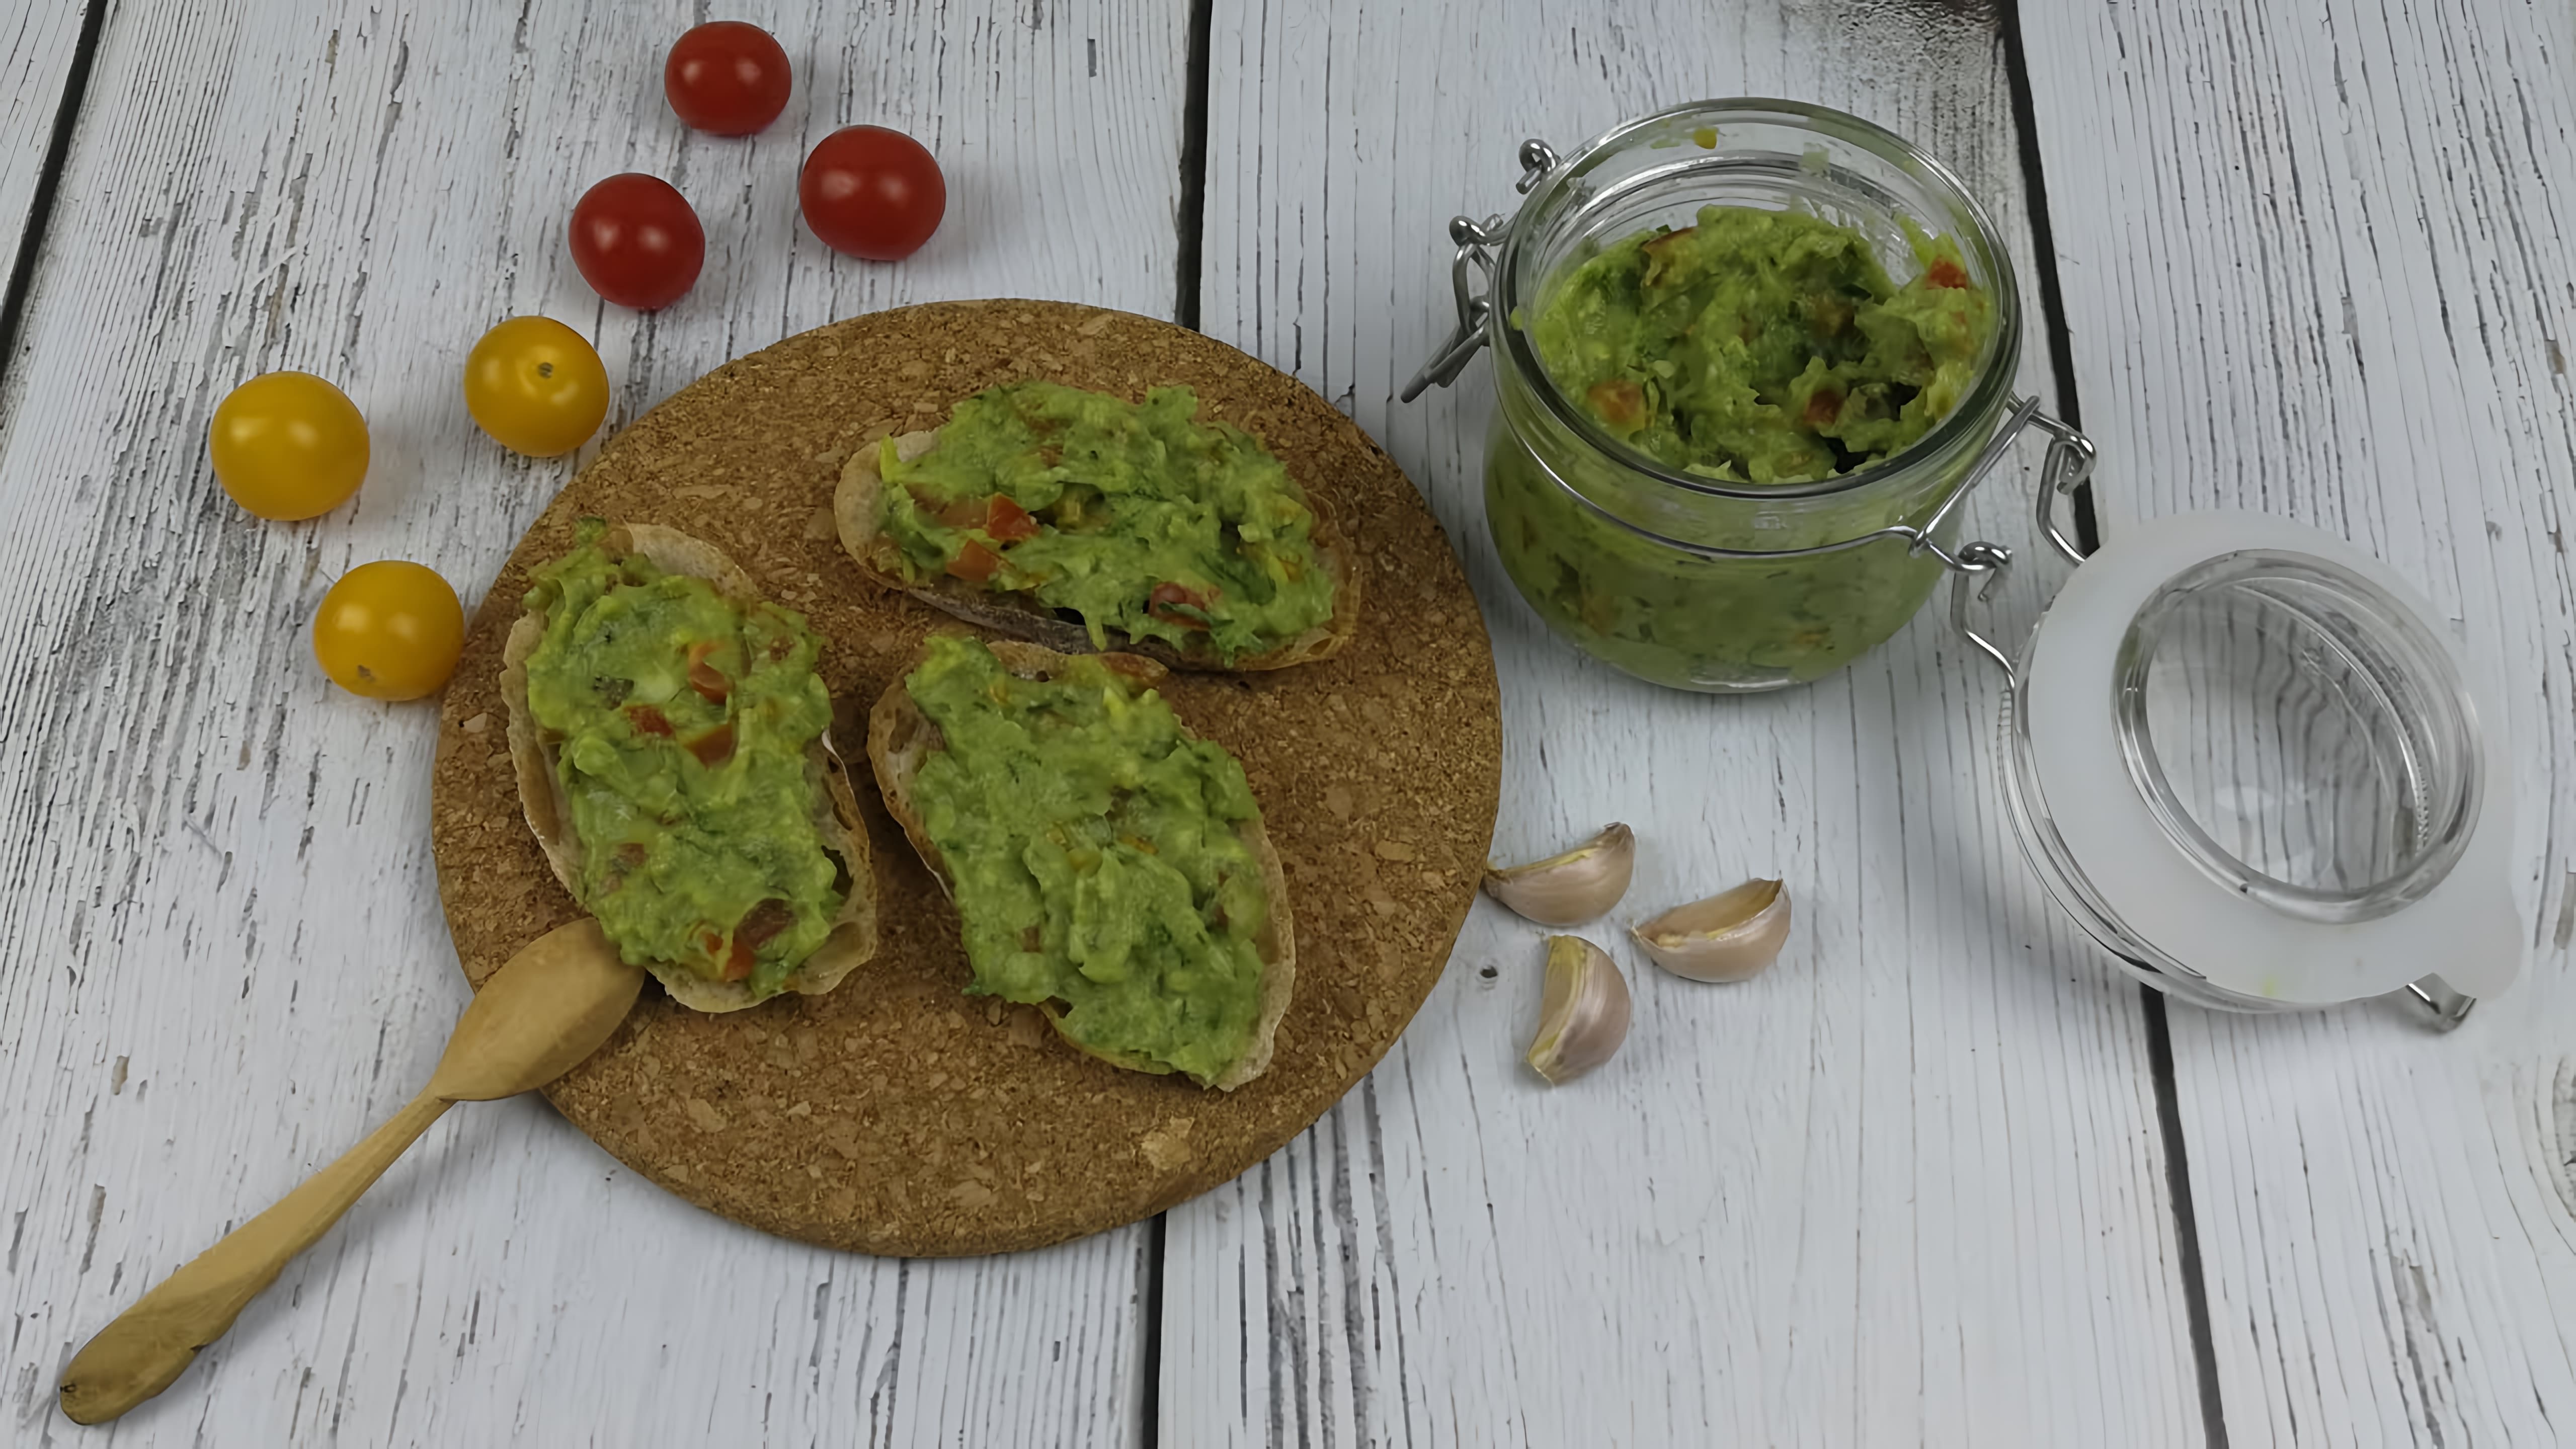 В этом видео демонстрируется рецепт гуакамоле - пастообразной закуски из авокадо, которая может быть подана с чипсами или использоваться в качестве основы для бутербродов